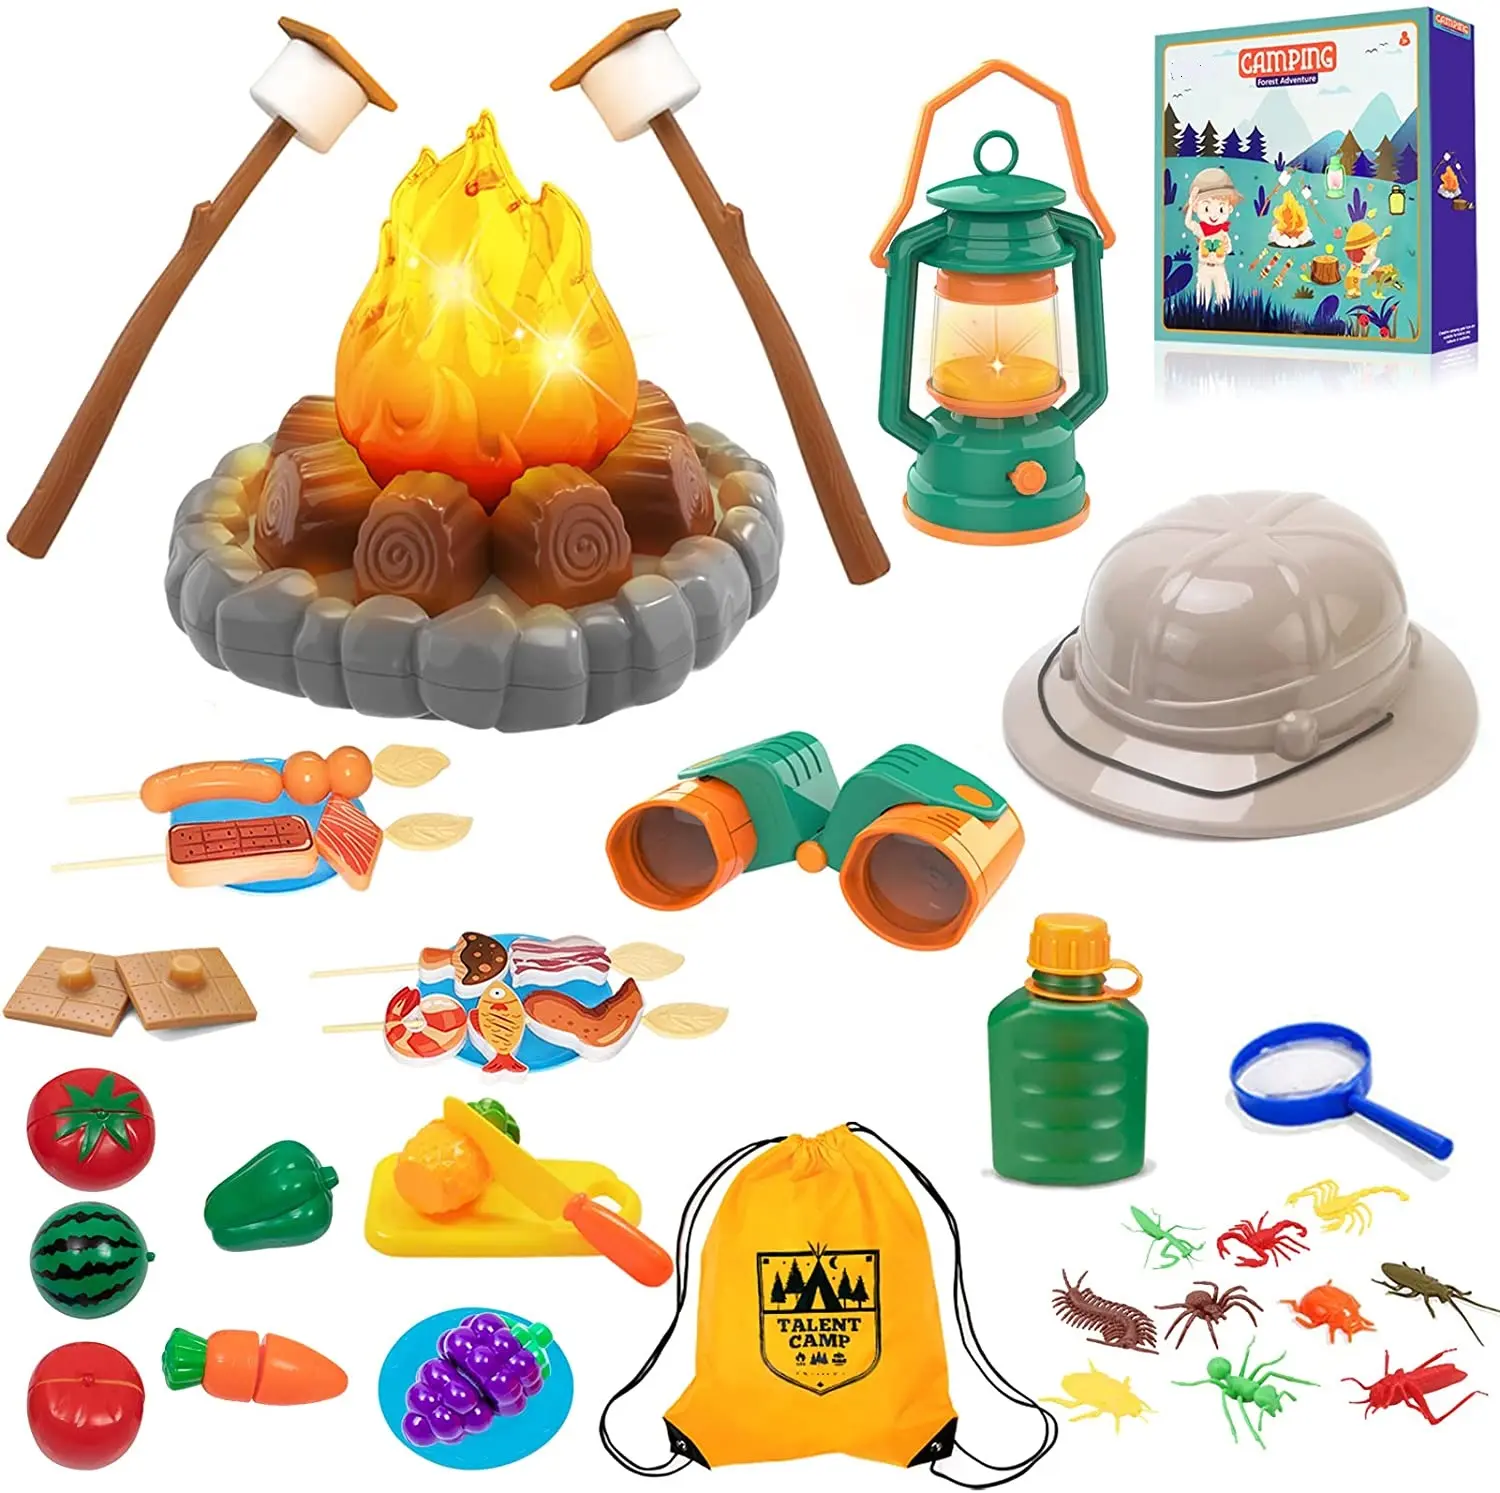 Camping Play Set Indoor Outdoor Speelgoed Voor Kinderen Pretend Play Game Simuleren De Echte Camping Activiteiten